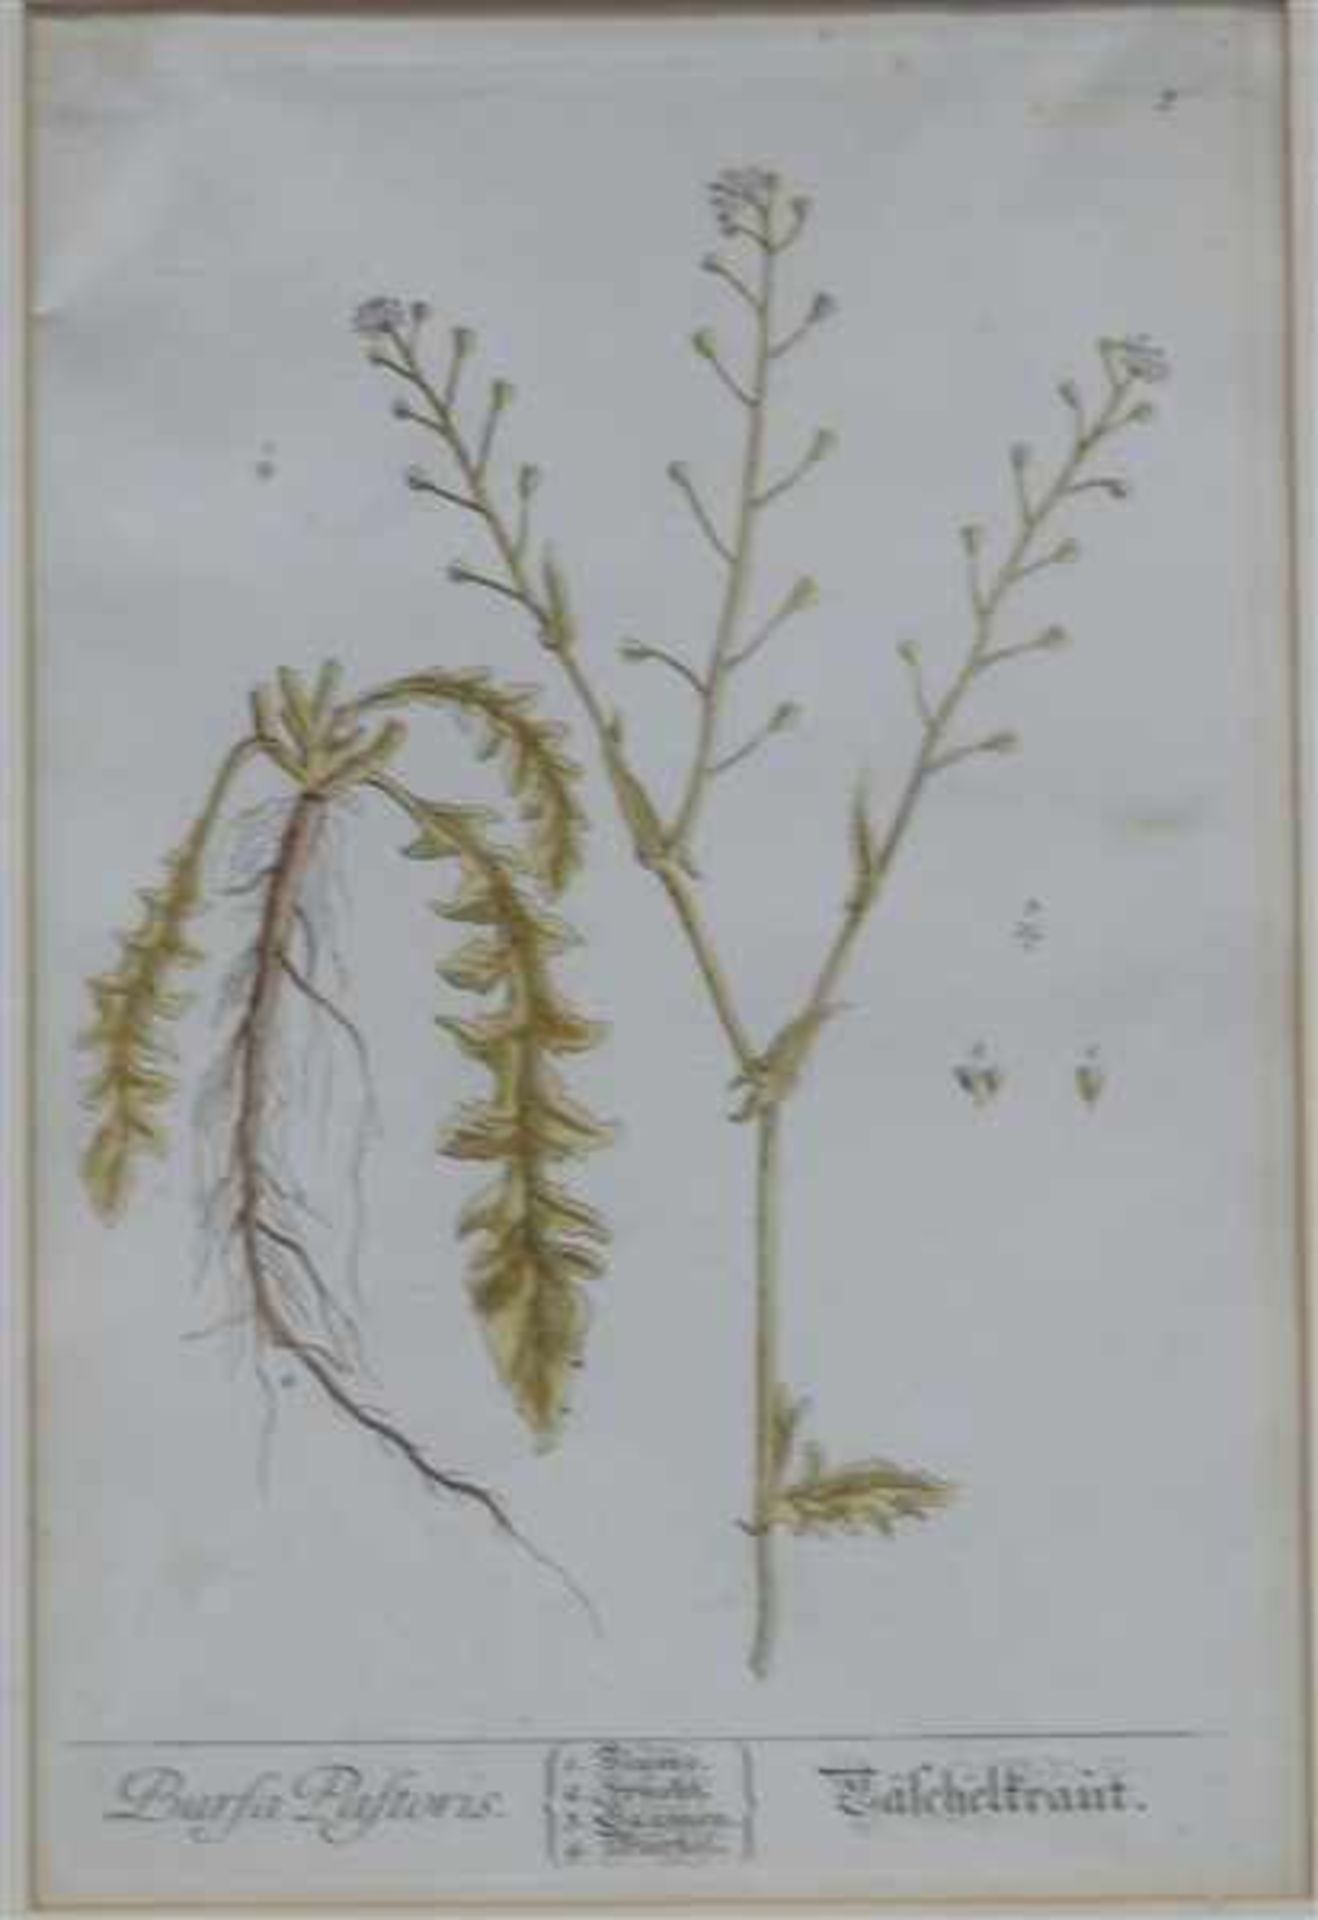 Kupferstichcoloriert, "Gäschelkraut", Elisabeth Blackwell, 187. Jh., gestochen von Fleischmann,